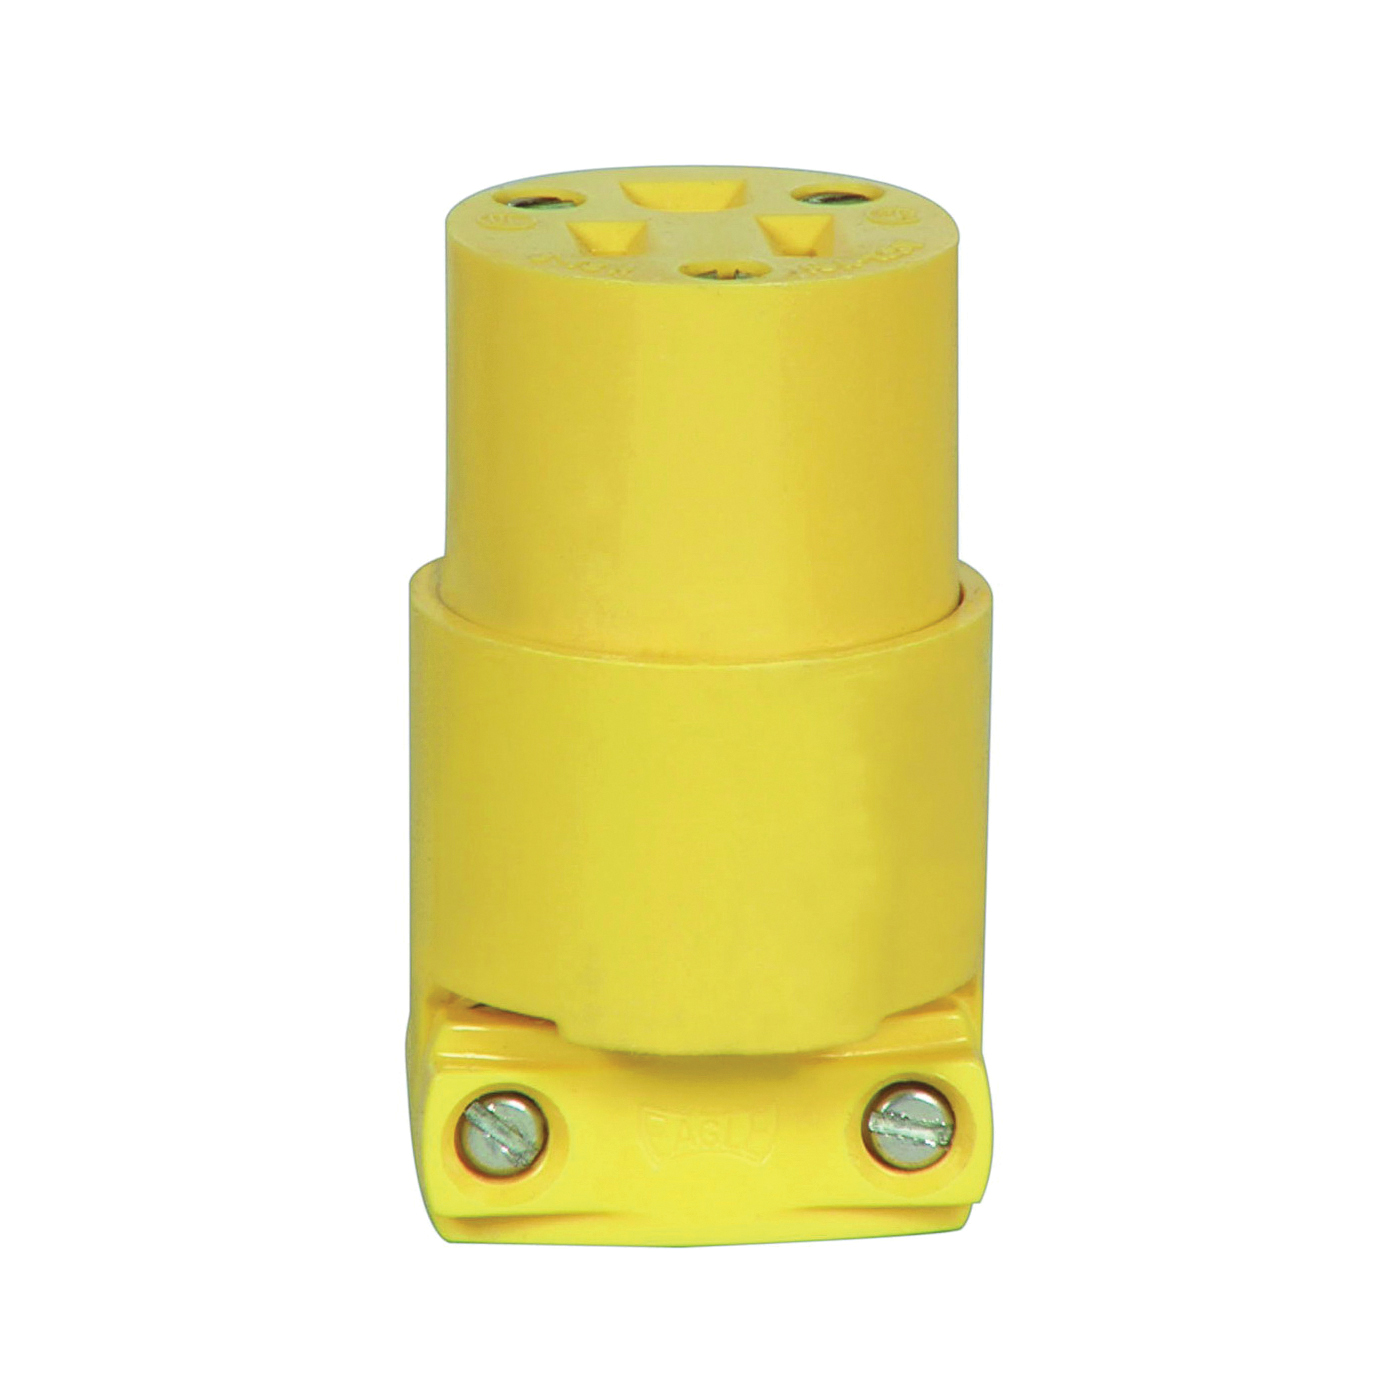 BP4887 Electrical Connector, 2 -Pole, 15 A, 125 V, Slot, NEMA: NEMA 5-15, Yellow